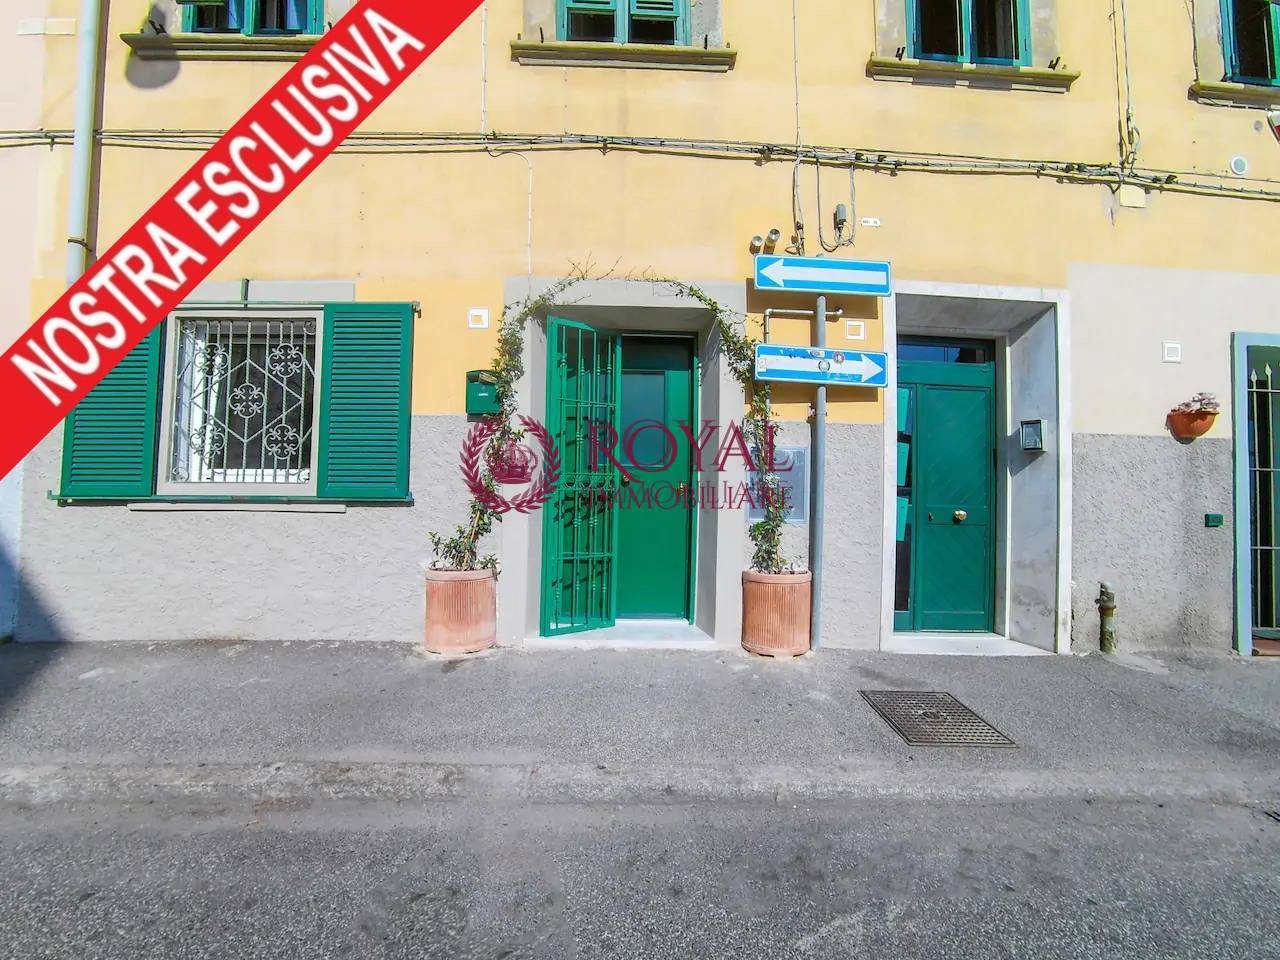 Appartamento in vendita Livorno